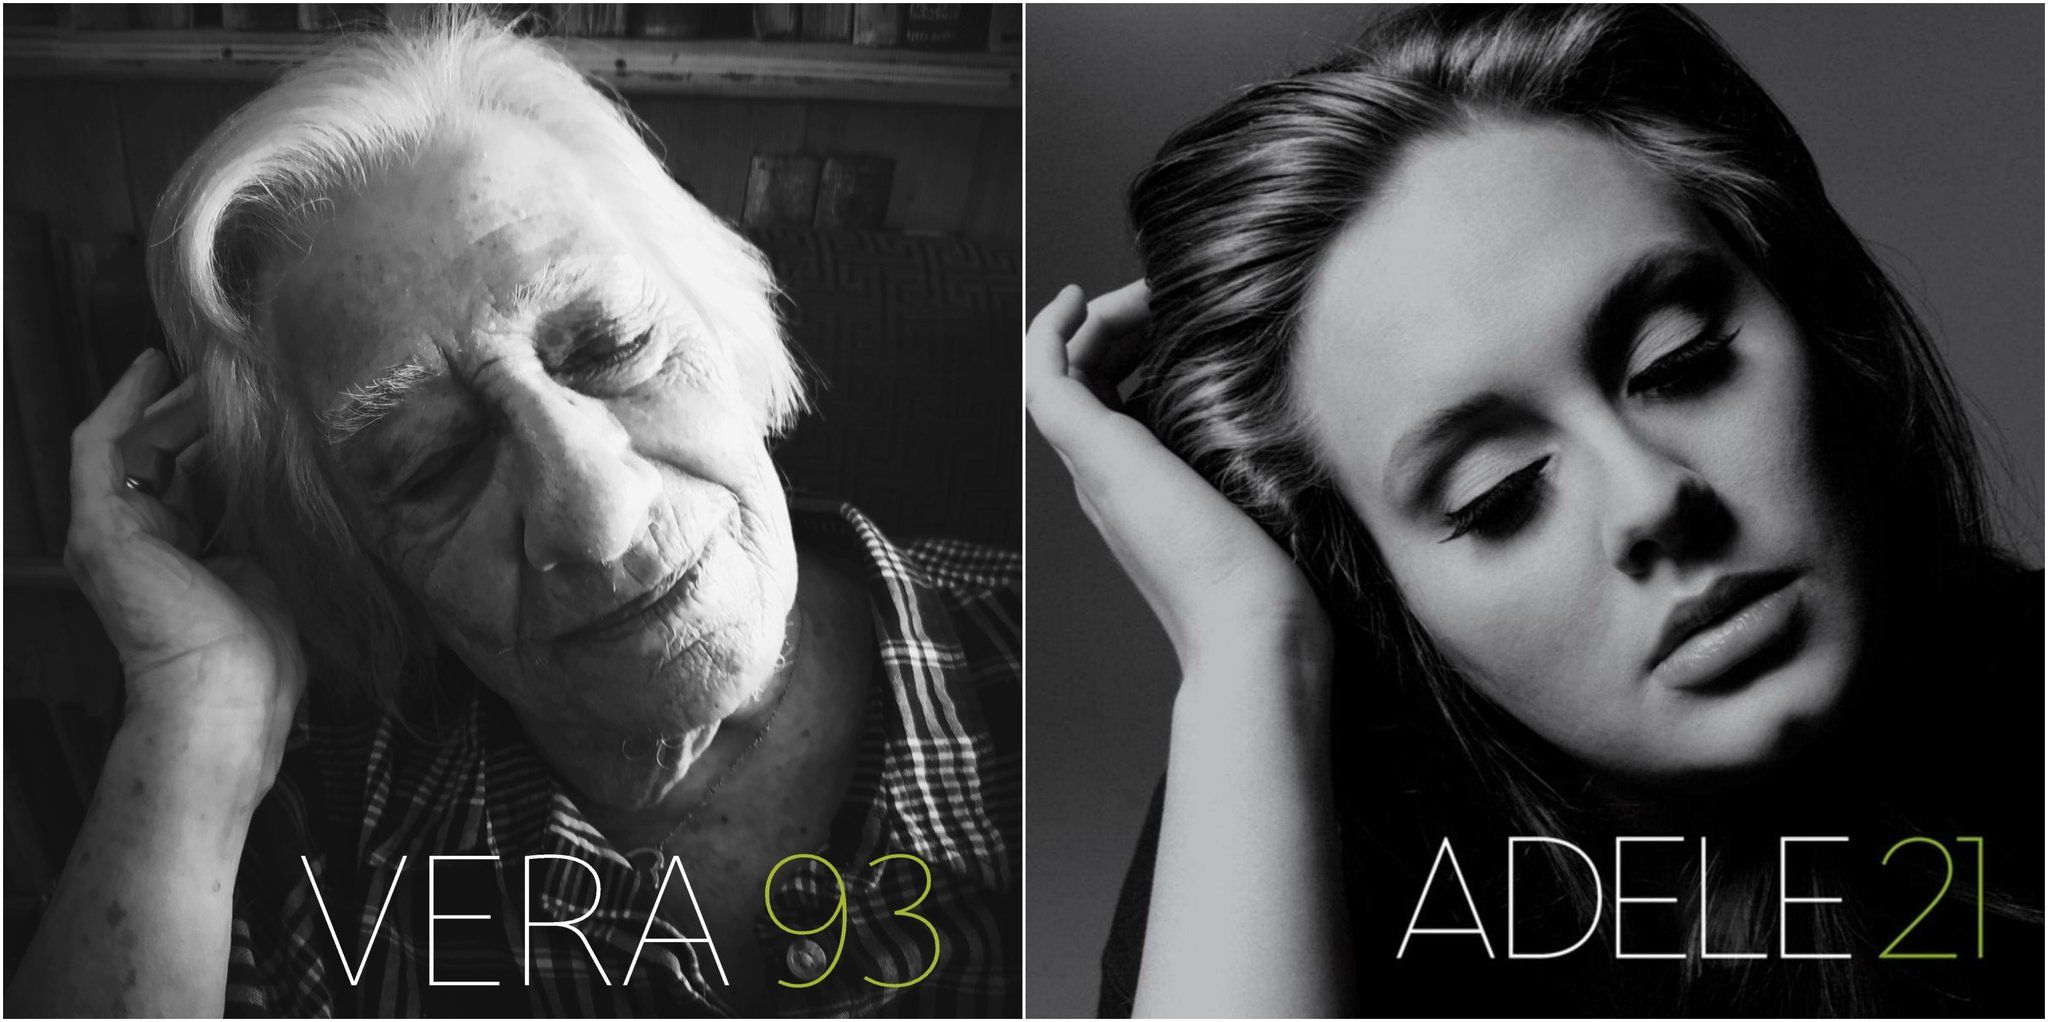 Vera 93 - Adele 21